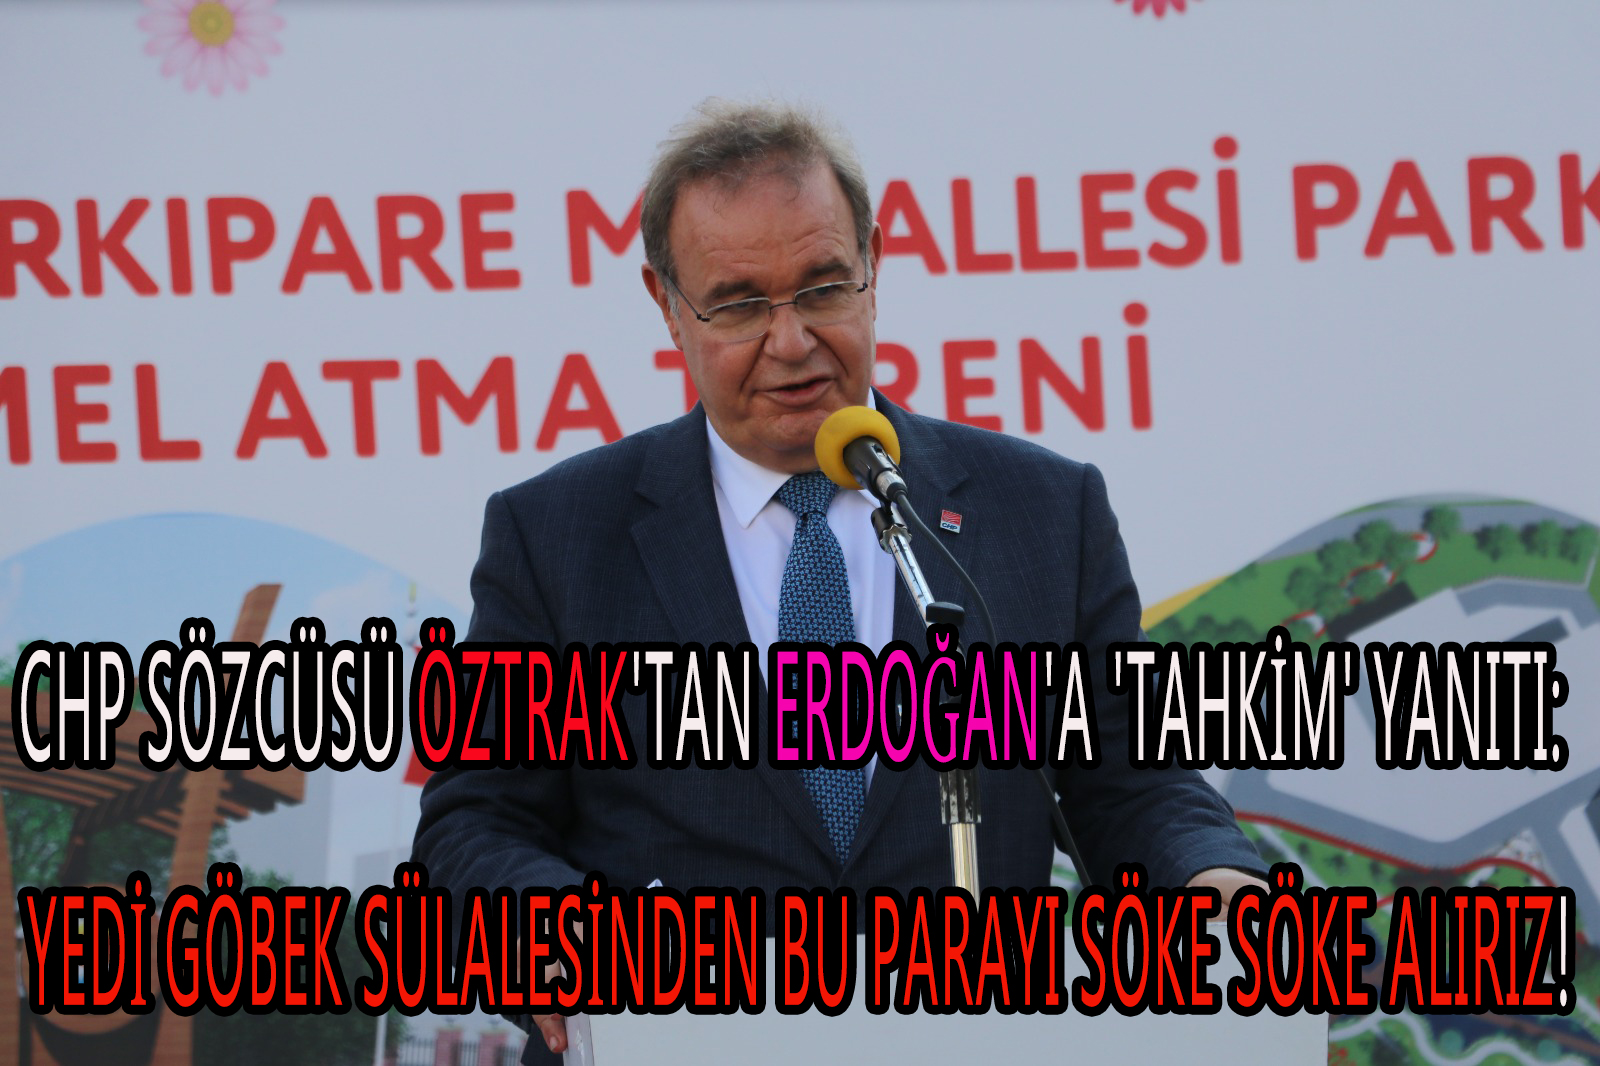 CHP Sözcüsü Öztrak’tan Erdoğan’a ‘tahkim’ yanıtı: yedi göbek sülalesinden bu parayı söke söke alırız!